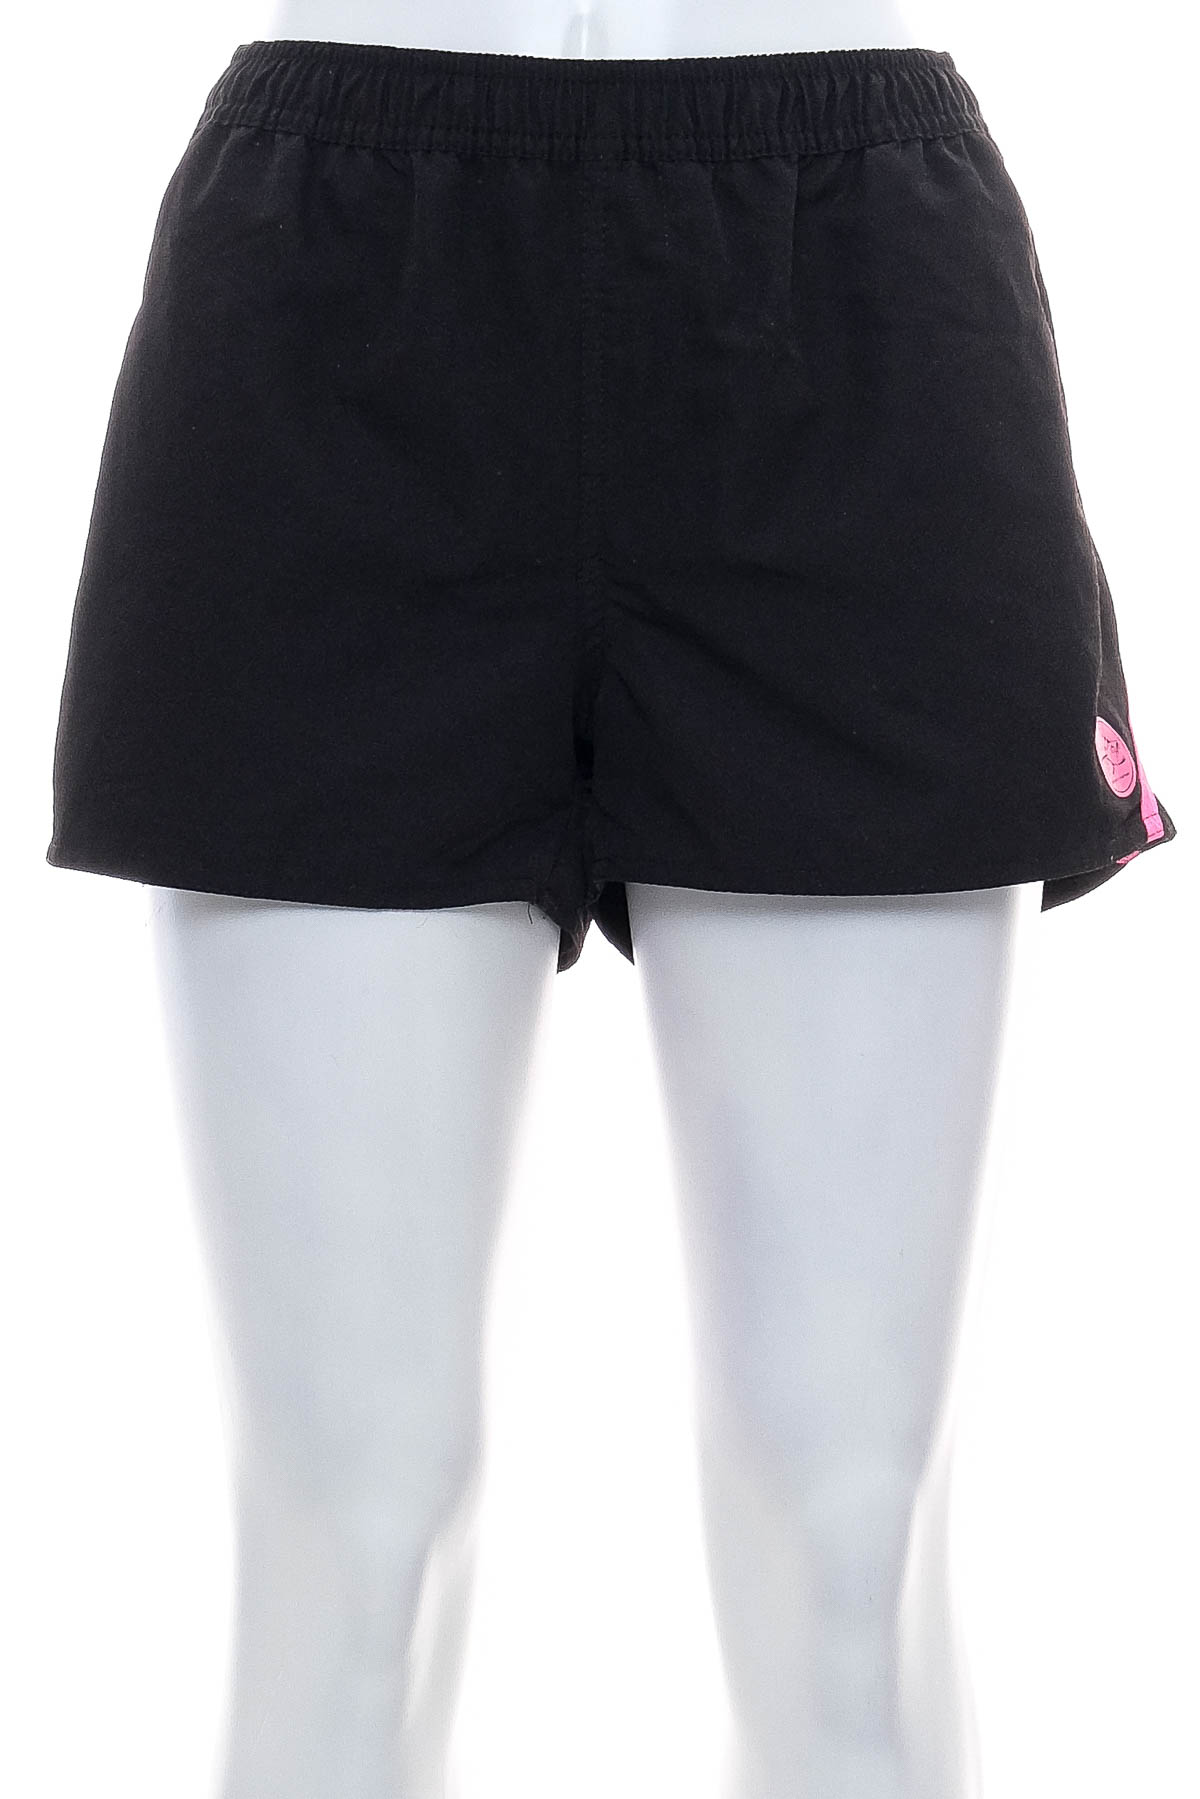 Women's shorts - Hot tuna - 0